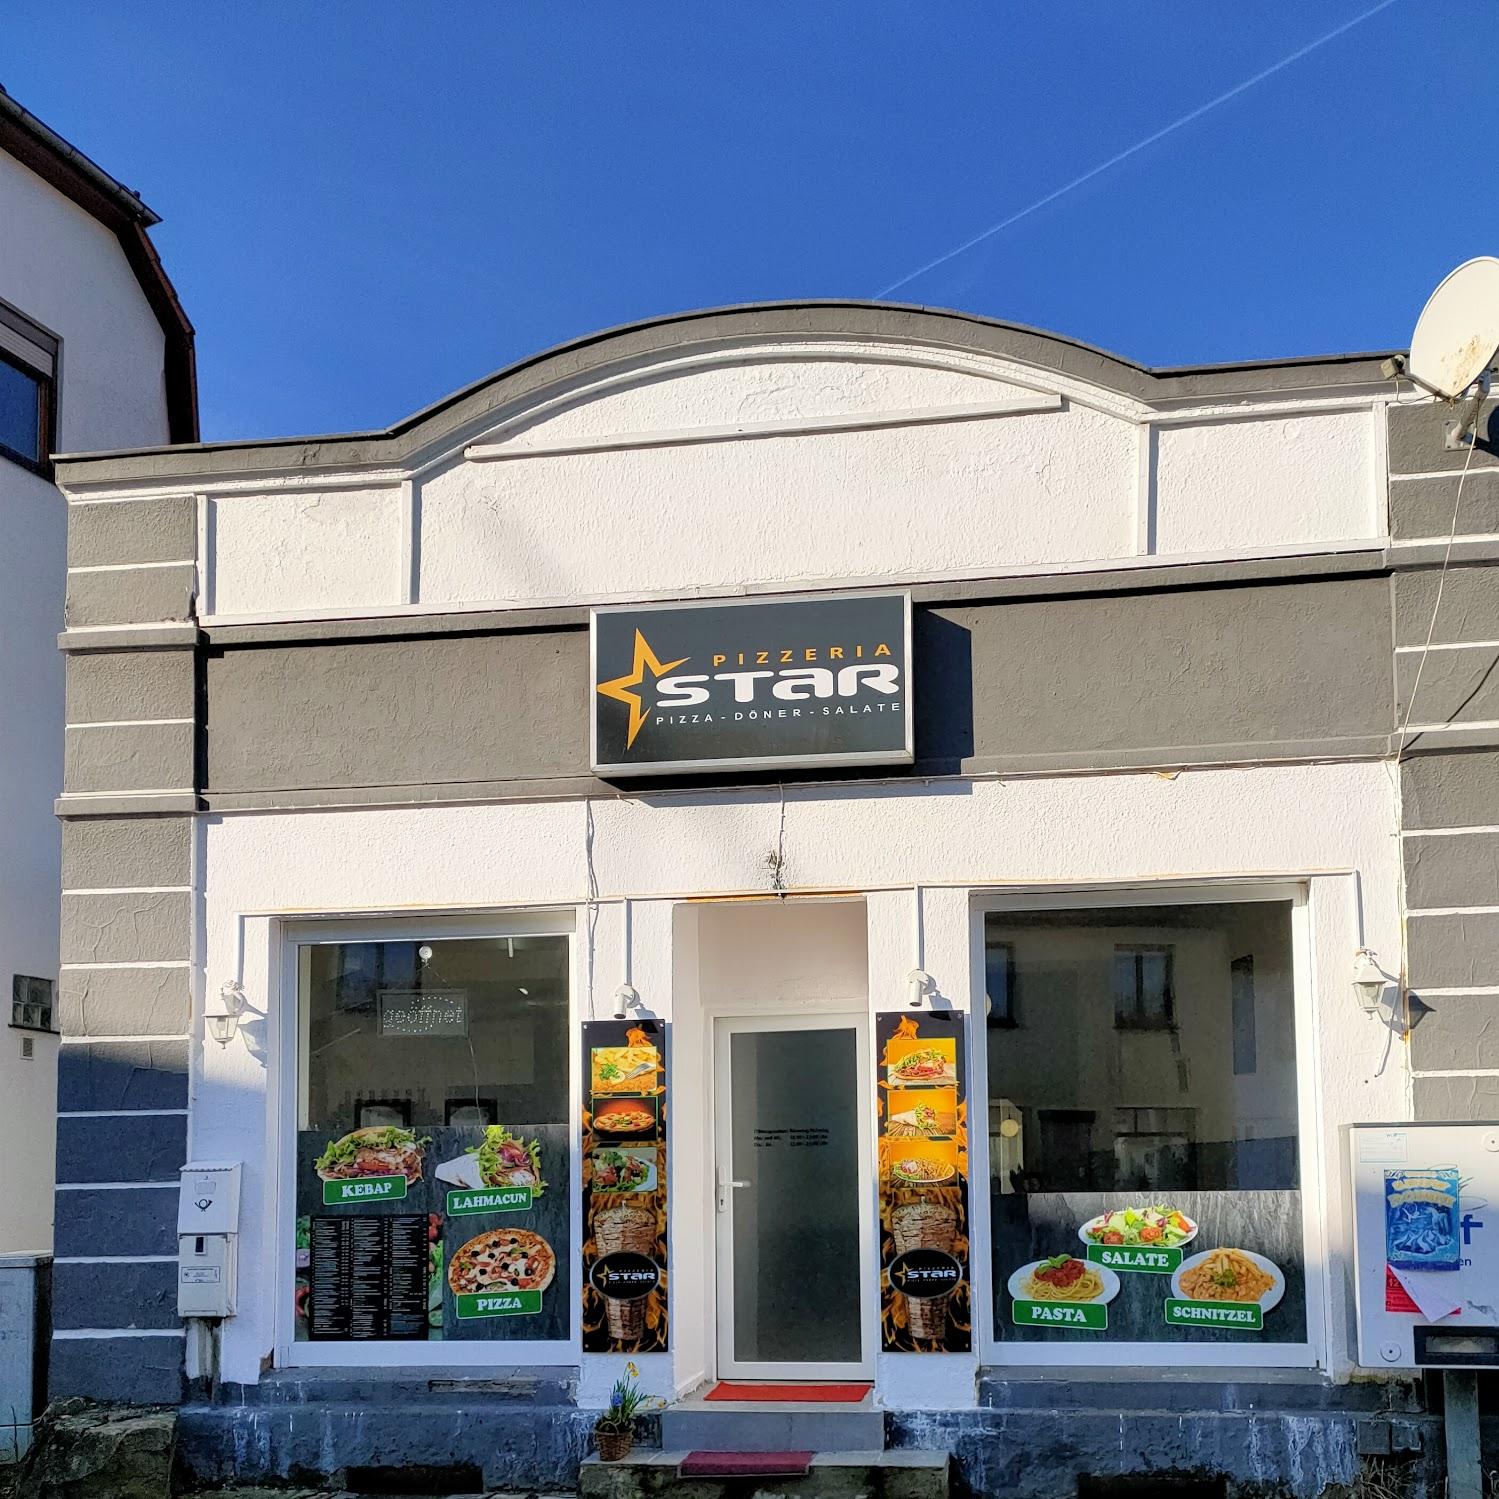 Restaurant "Star Pizzeria" in Dermbach